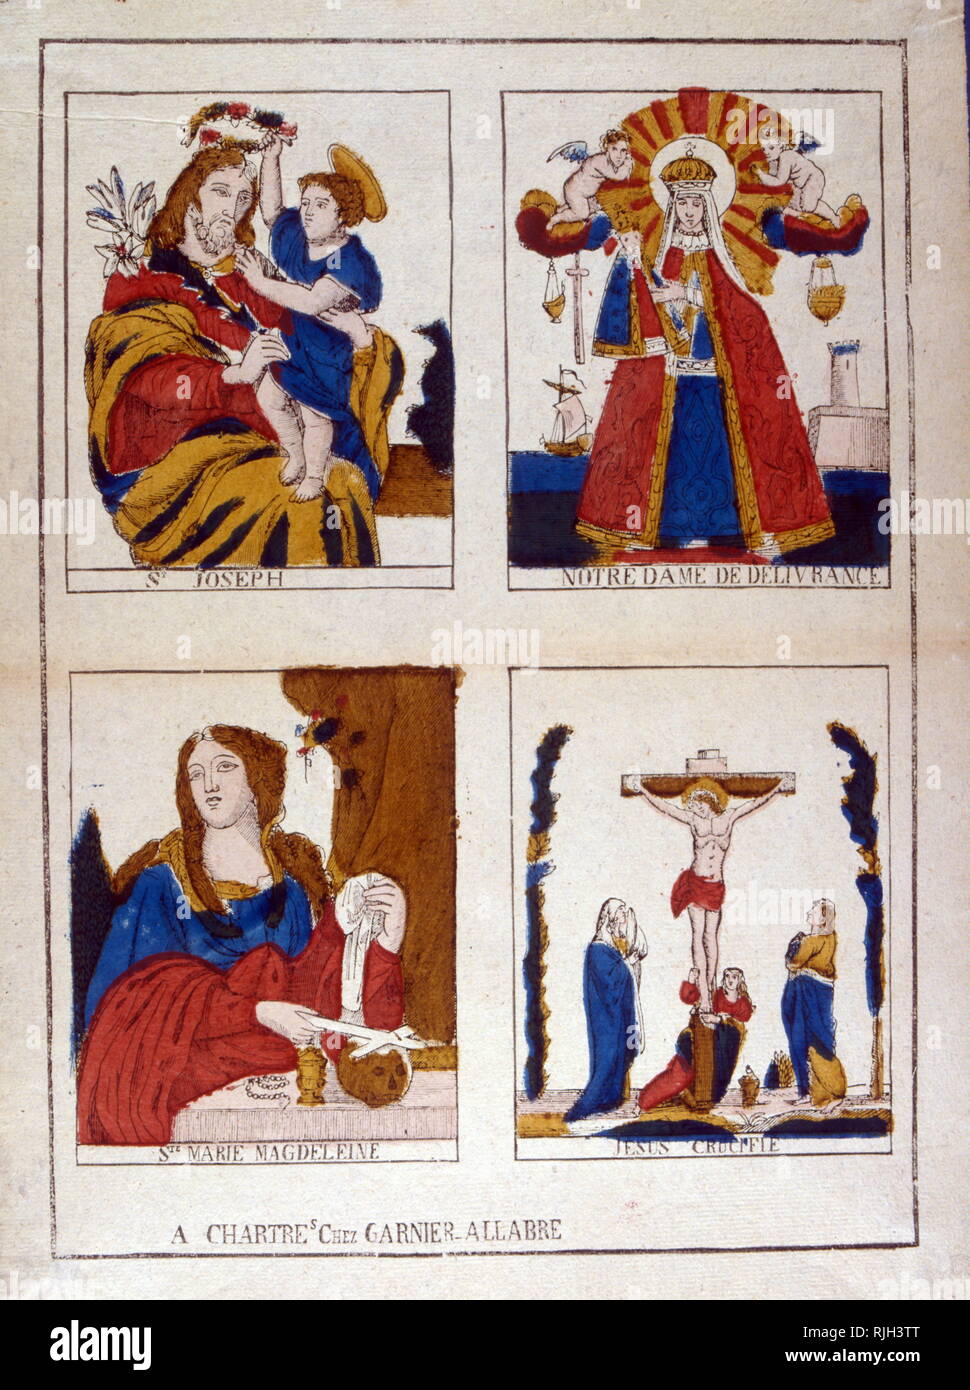 Cattolica Francese illustrazioni di Santi, Giuseppe, Notre Dame de la liberazione, Maria Maddalena, Gesù crocifisso. 1860 Foto Stock